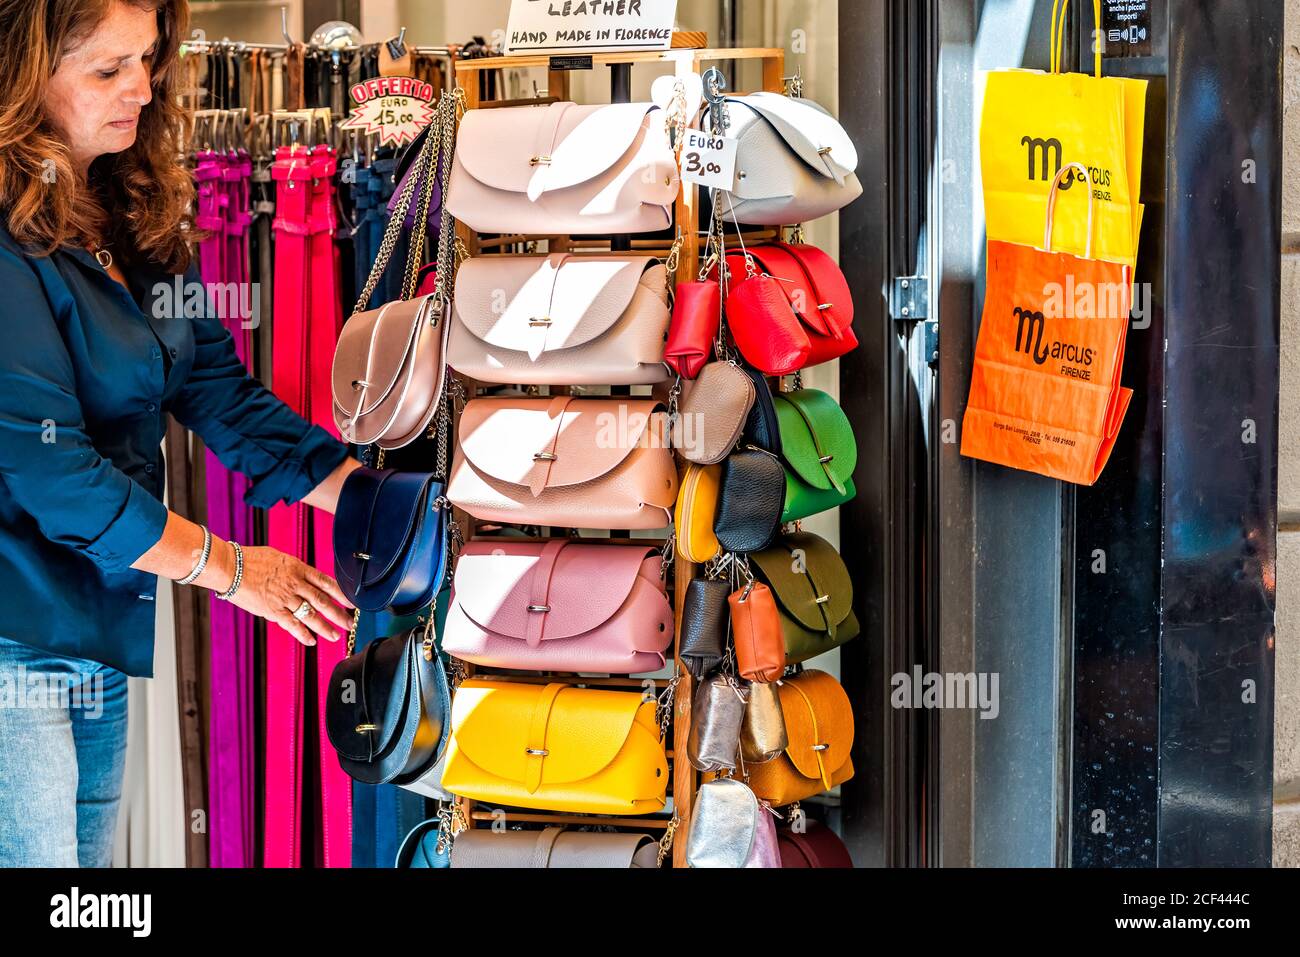 Florenz, Italien - 30. August 2018: Viele Ledertaschen bunte lebendige hängen auf dem Display in Shopping-Markt in Florenz in der Toskana mit Frau kaufen Stockfoto